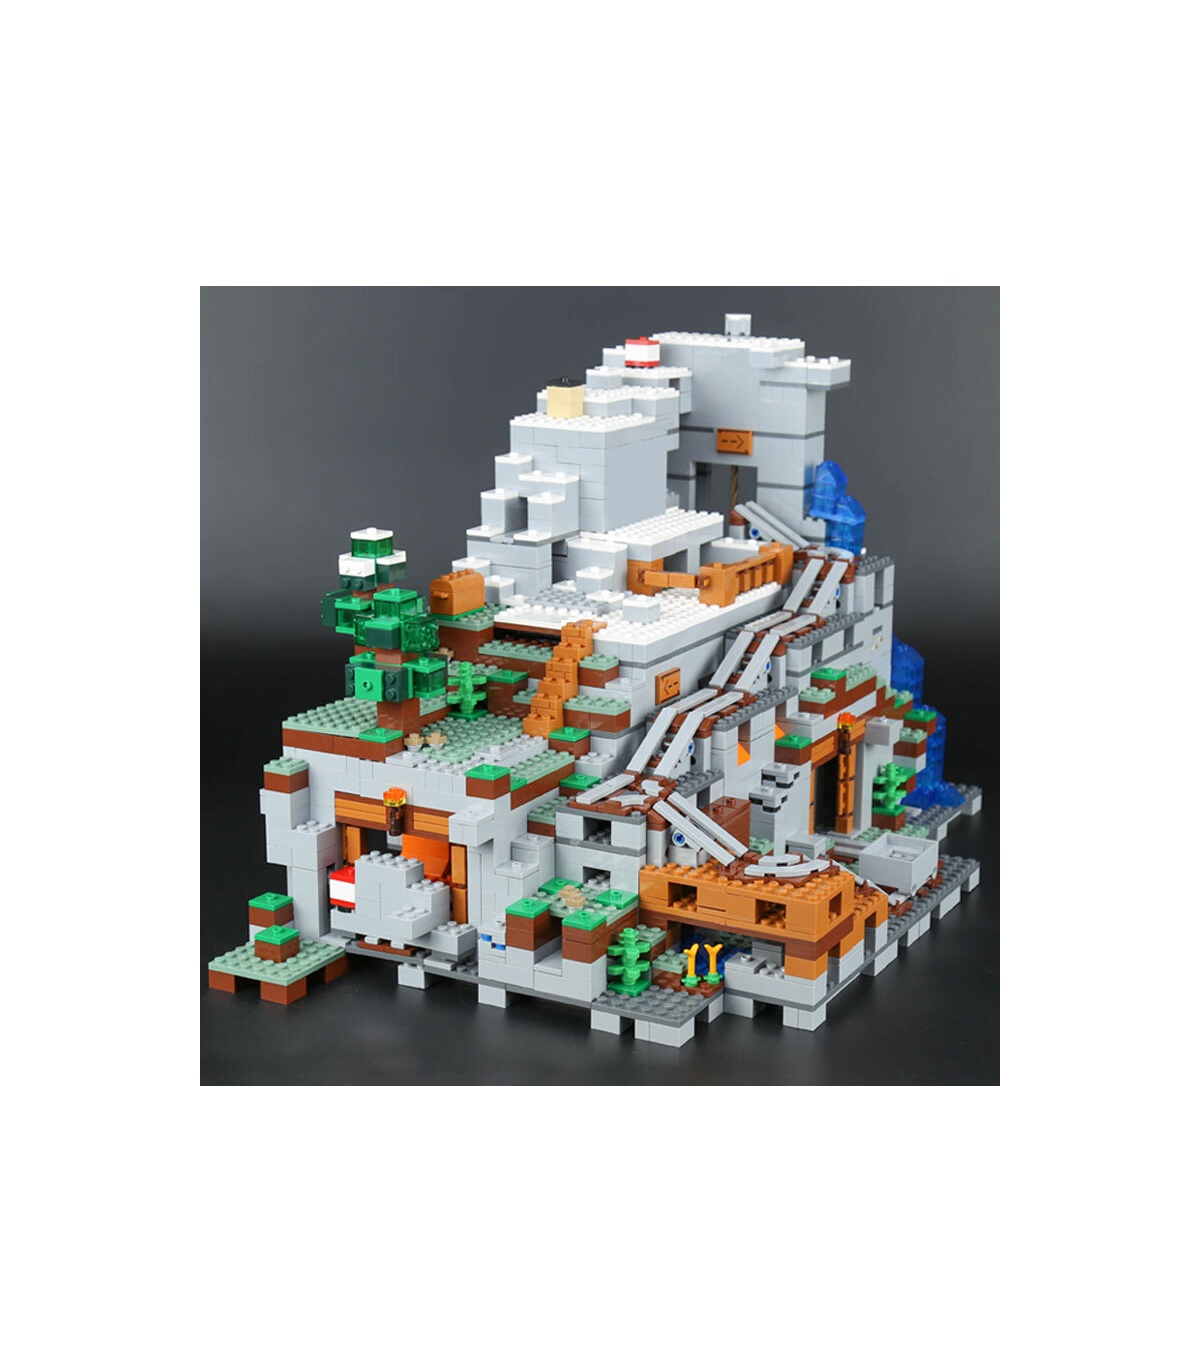 BLOQUES CONSTRUCCION COMPATIBLE LEGO CUEVA MINA MUNDO MINECRAFT 1000 PIEZAS 